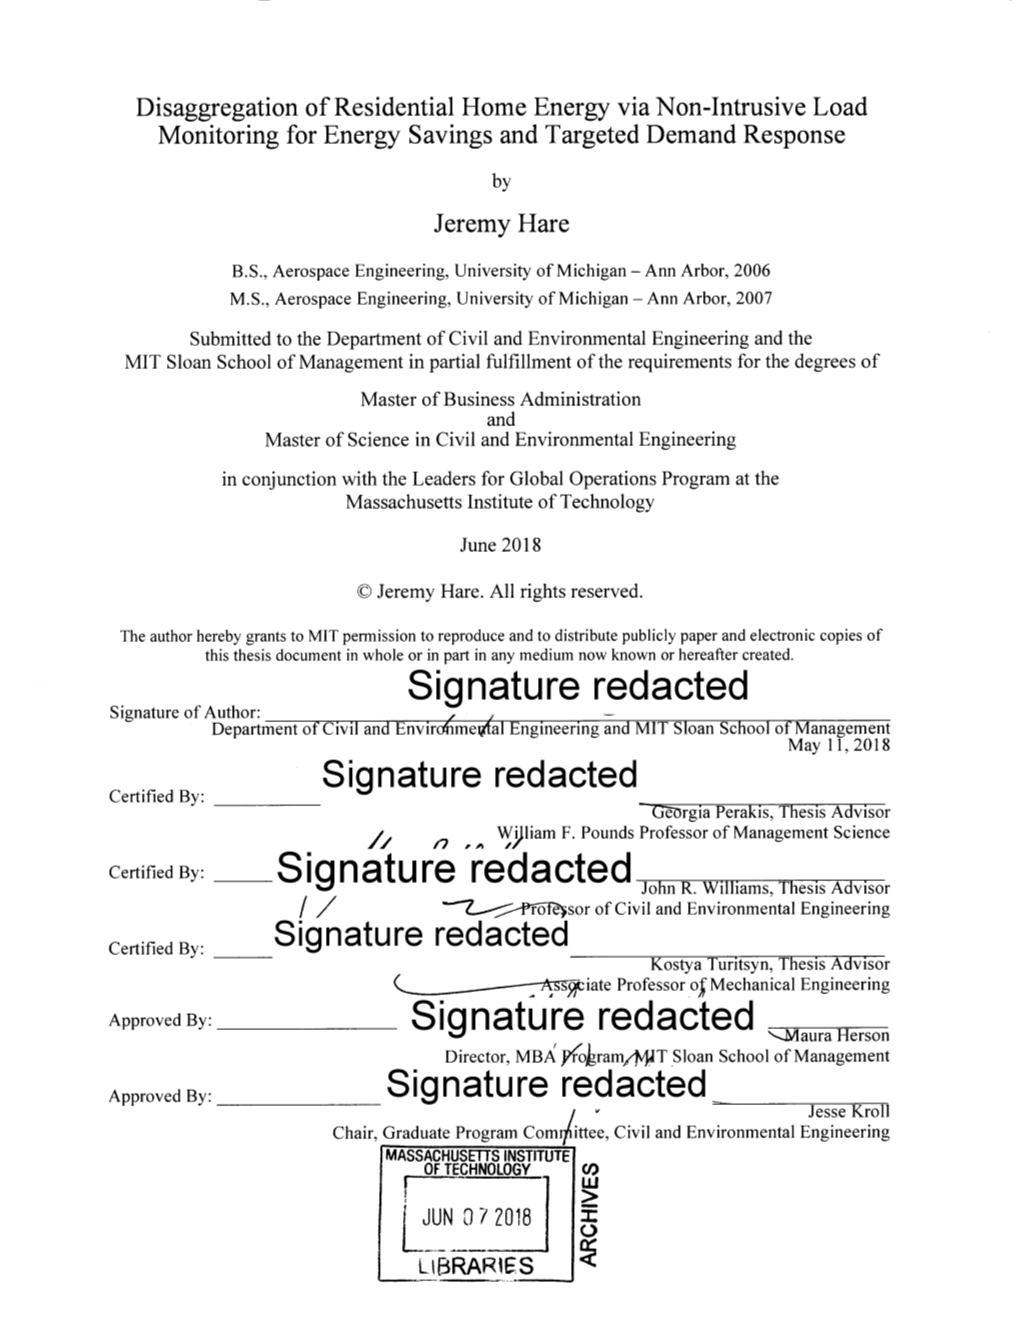 Signature Redacted___Rol